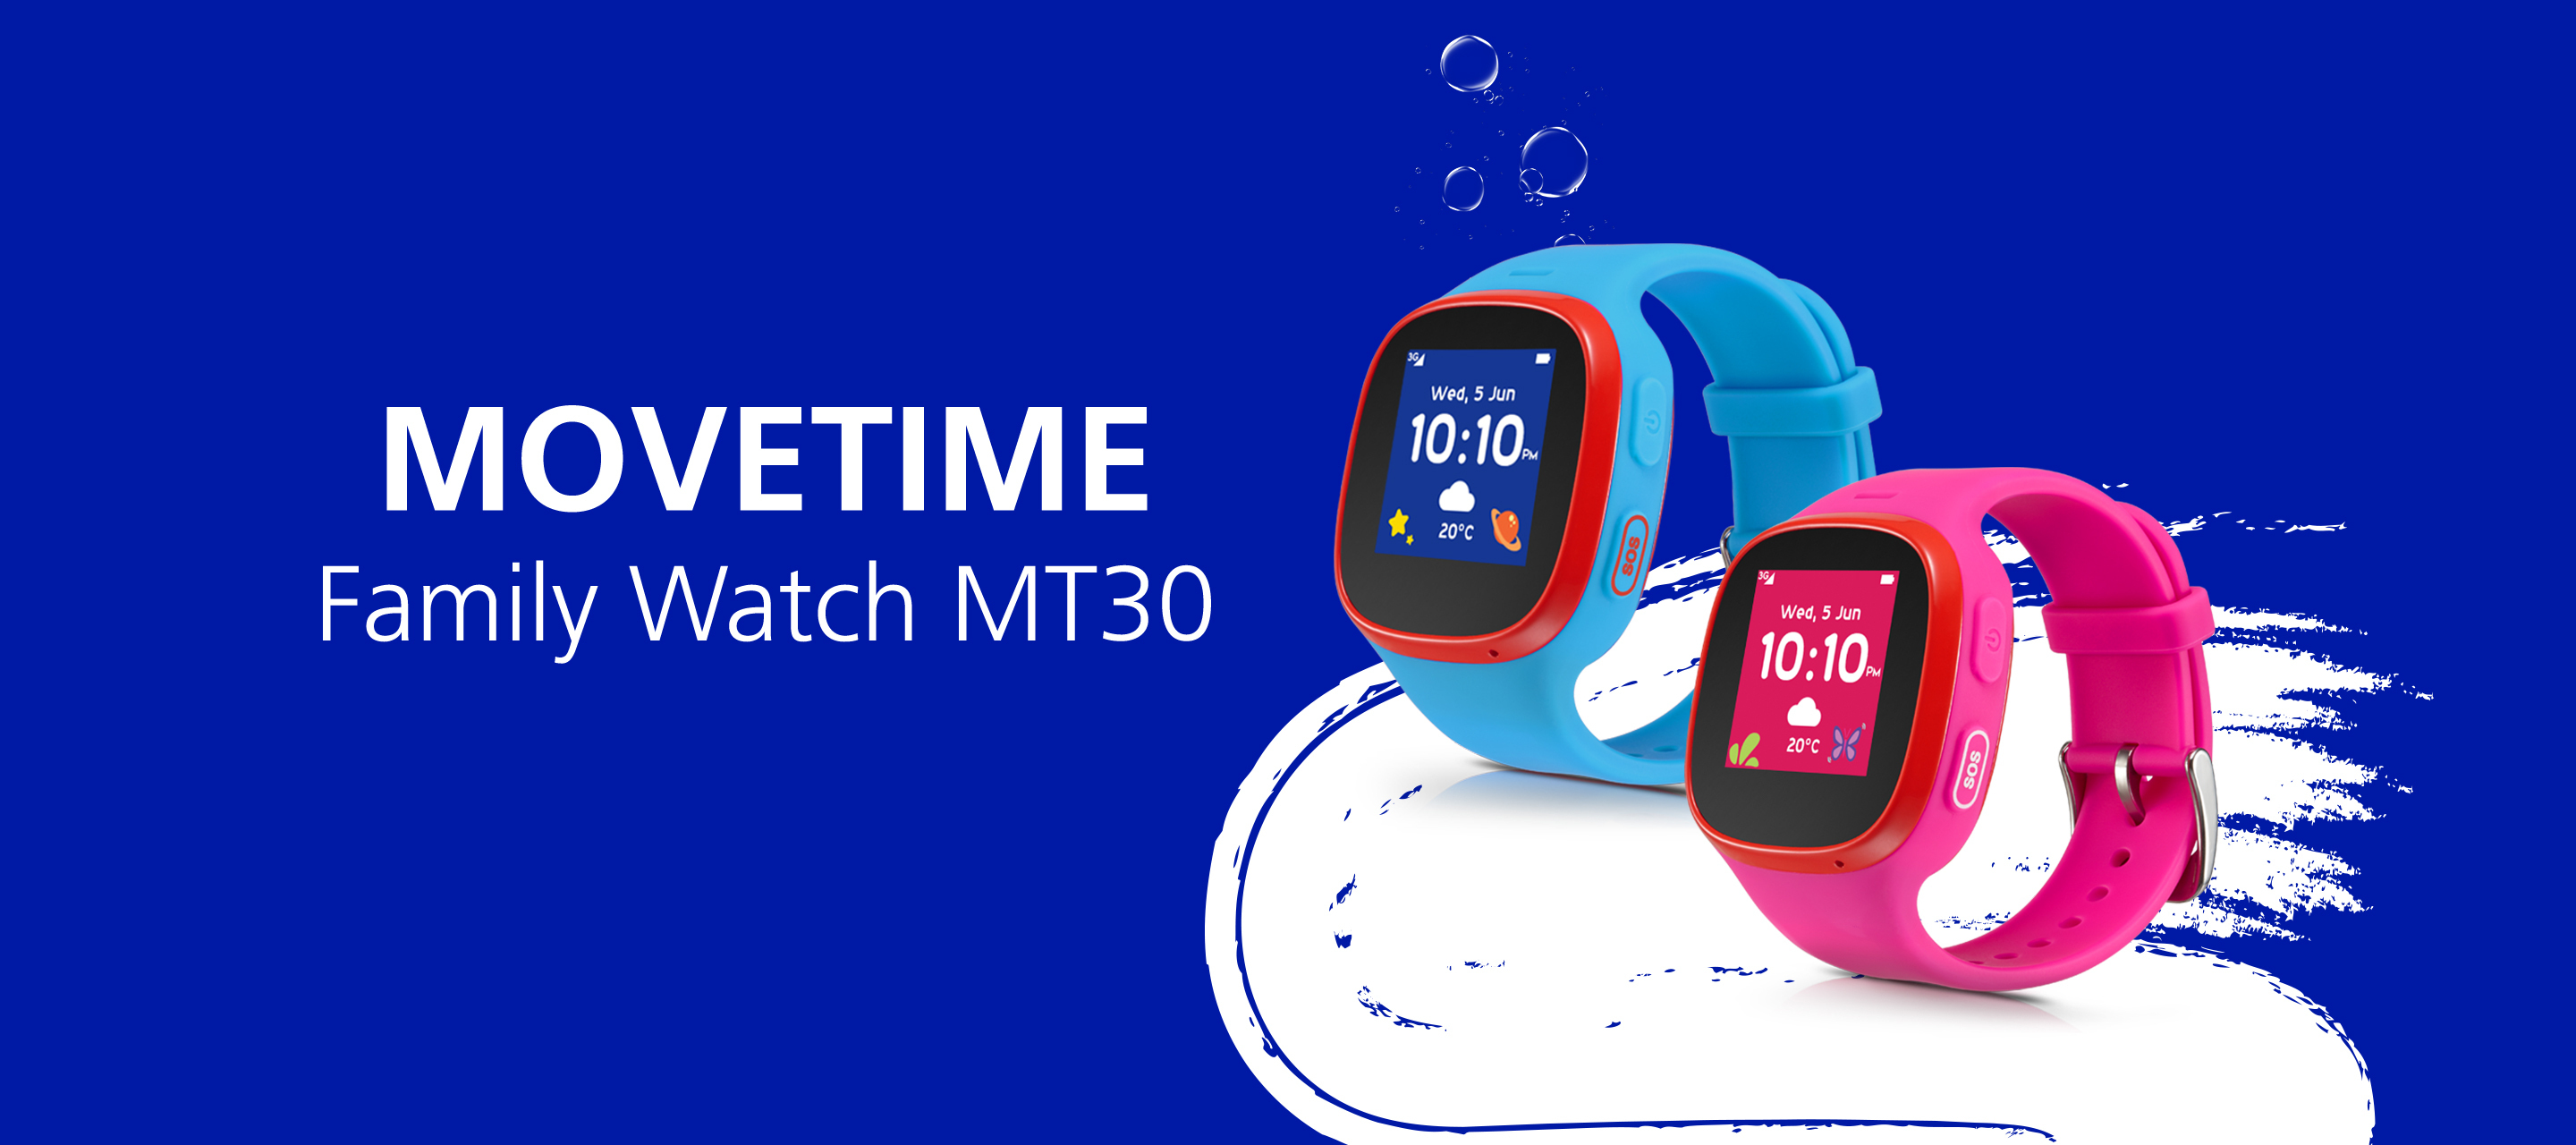 MOVETIME Family Watch MT30 - Die Smartwatch für Kinder bei O₂